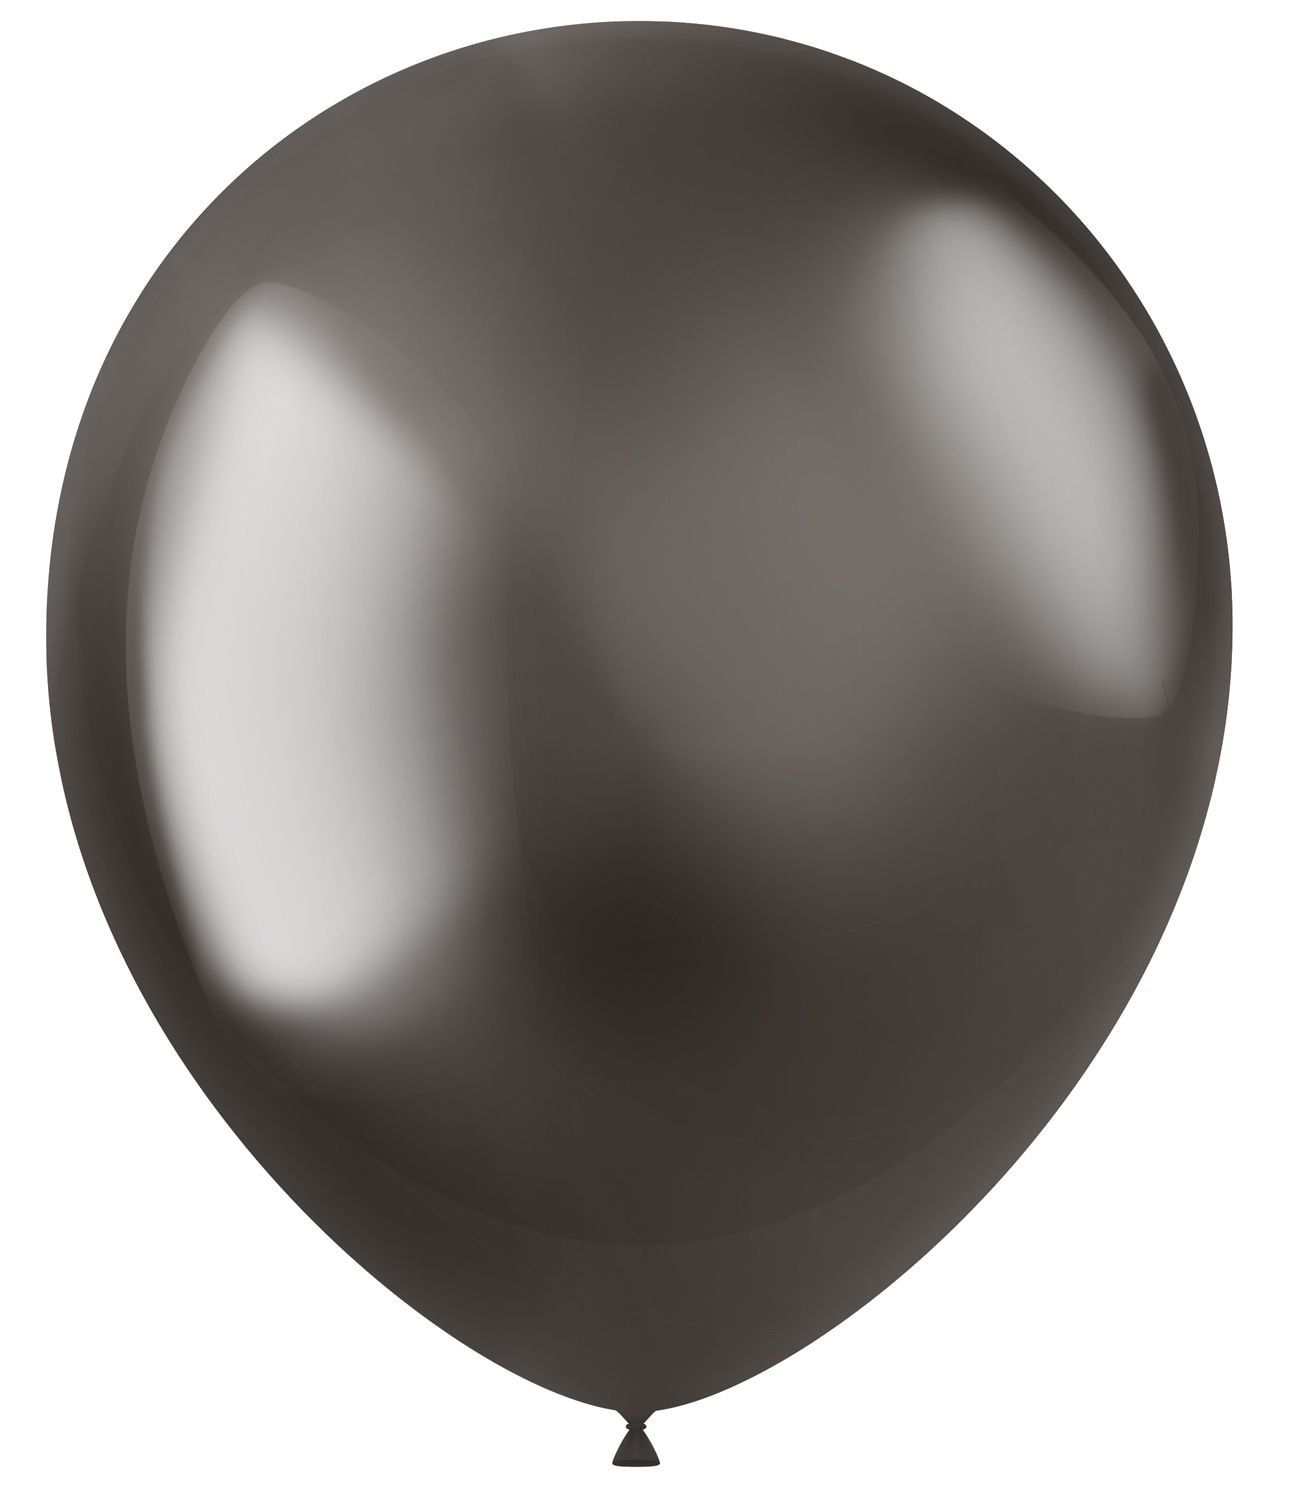 Ballonnen metallic grijs intense